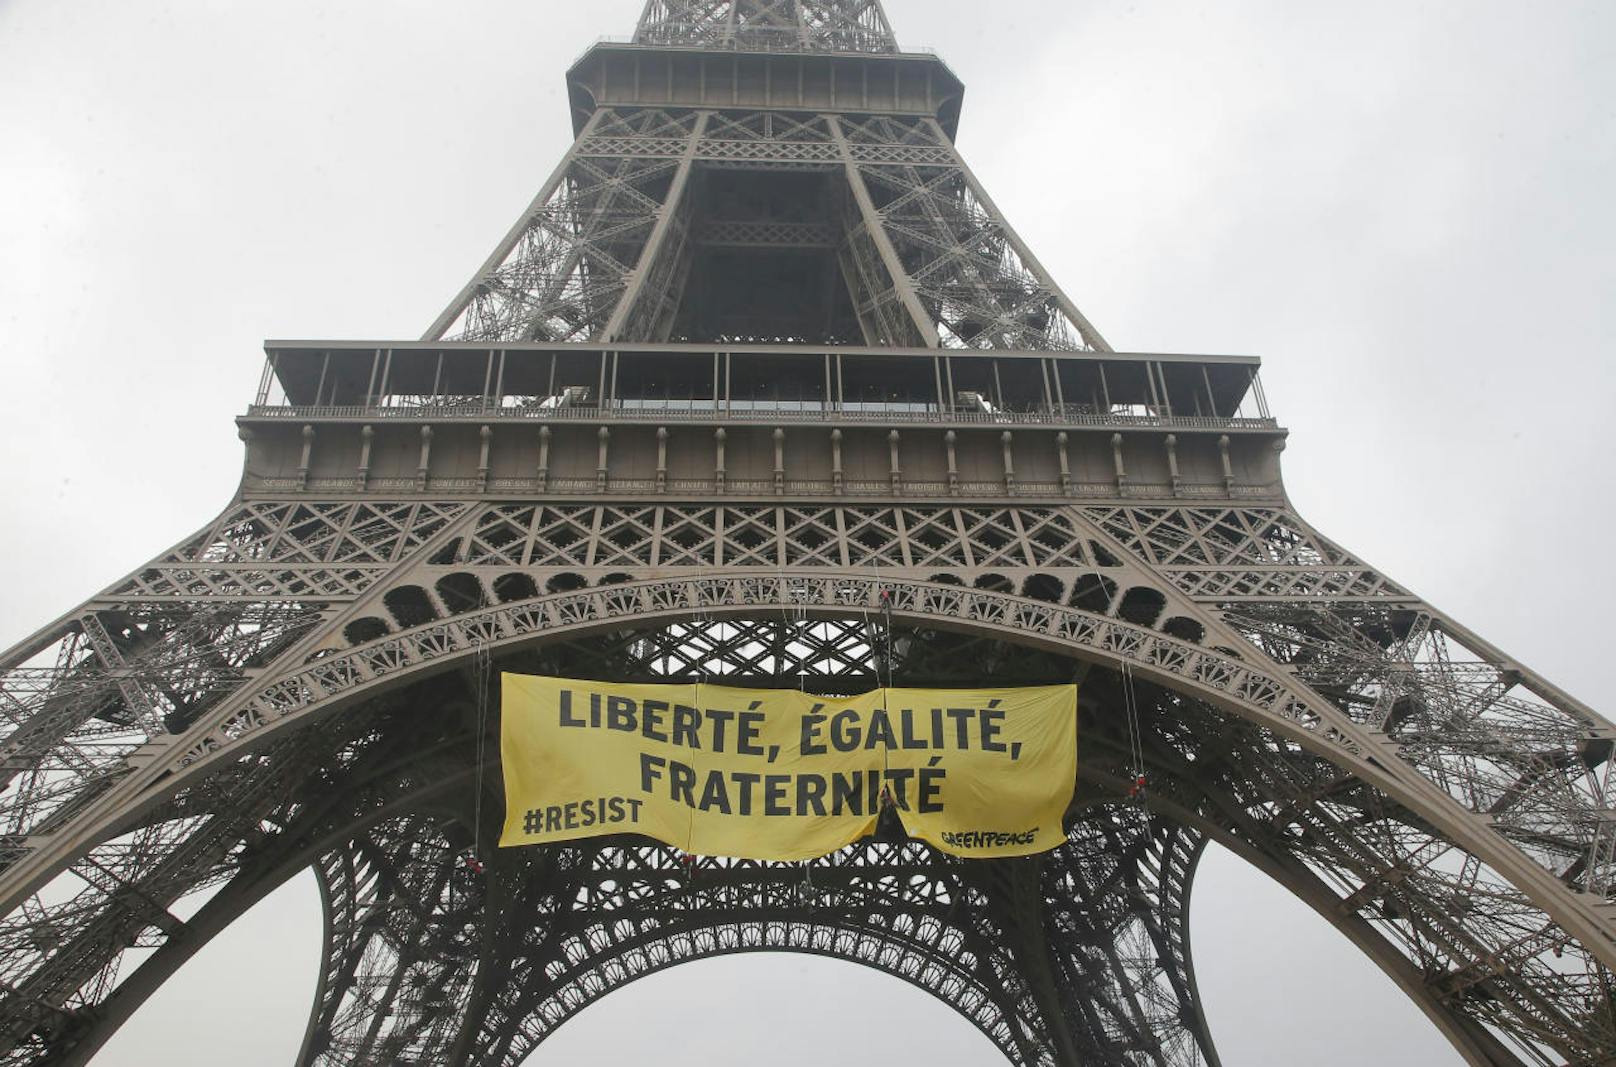 Greenpeace-Aktivisten brachten das riesige Transparent gegen den Front National am Eiffenturm an